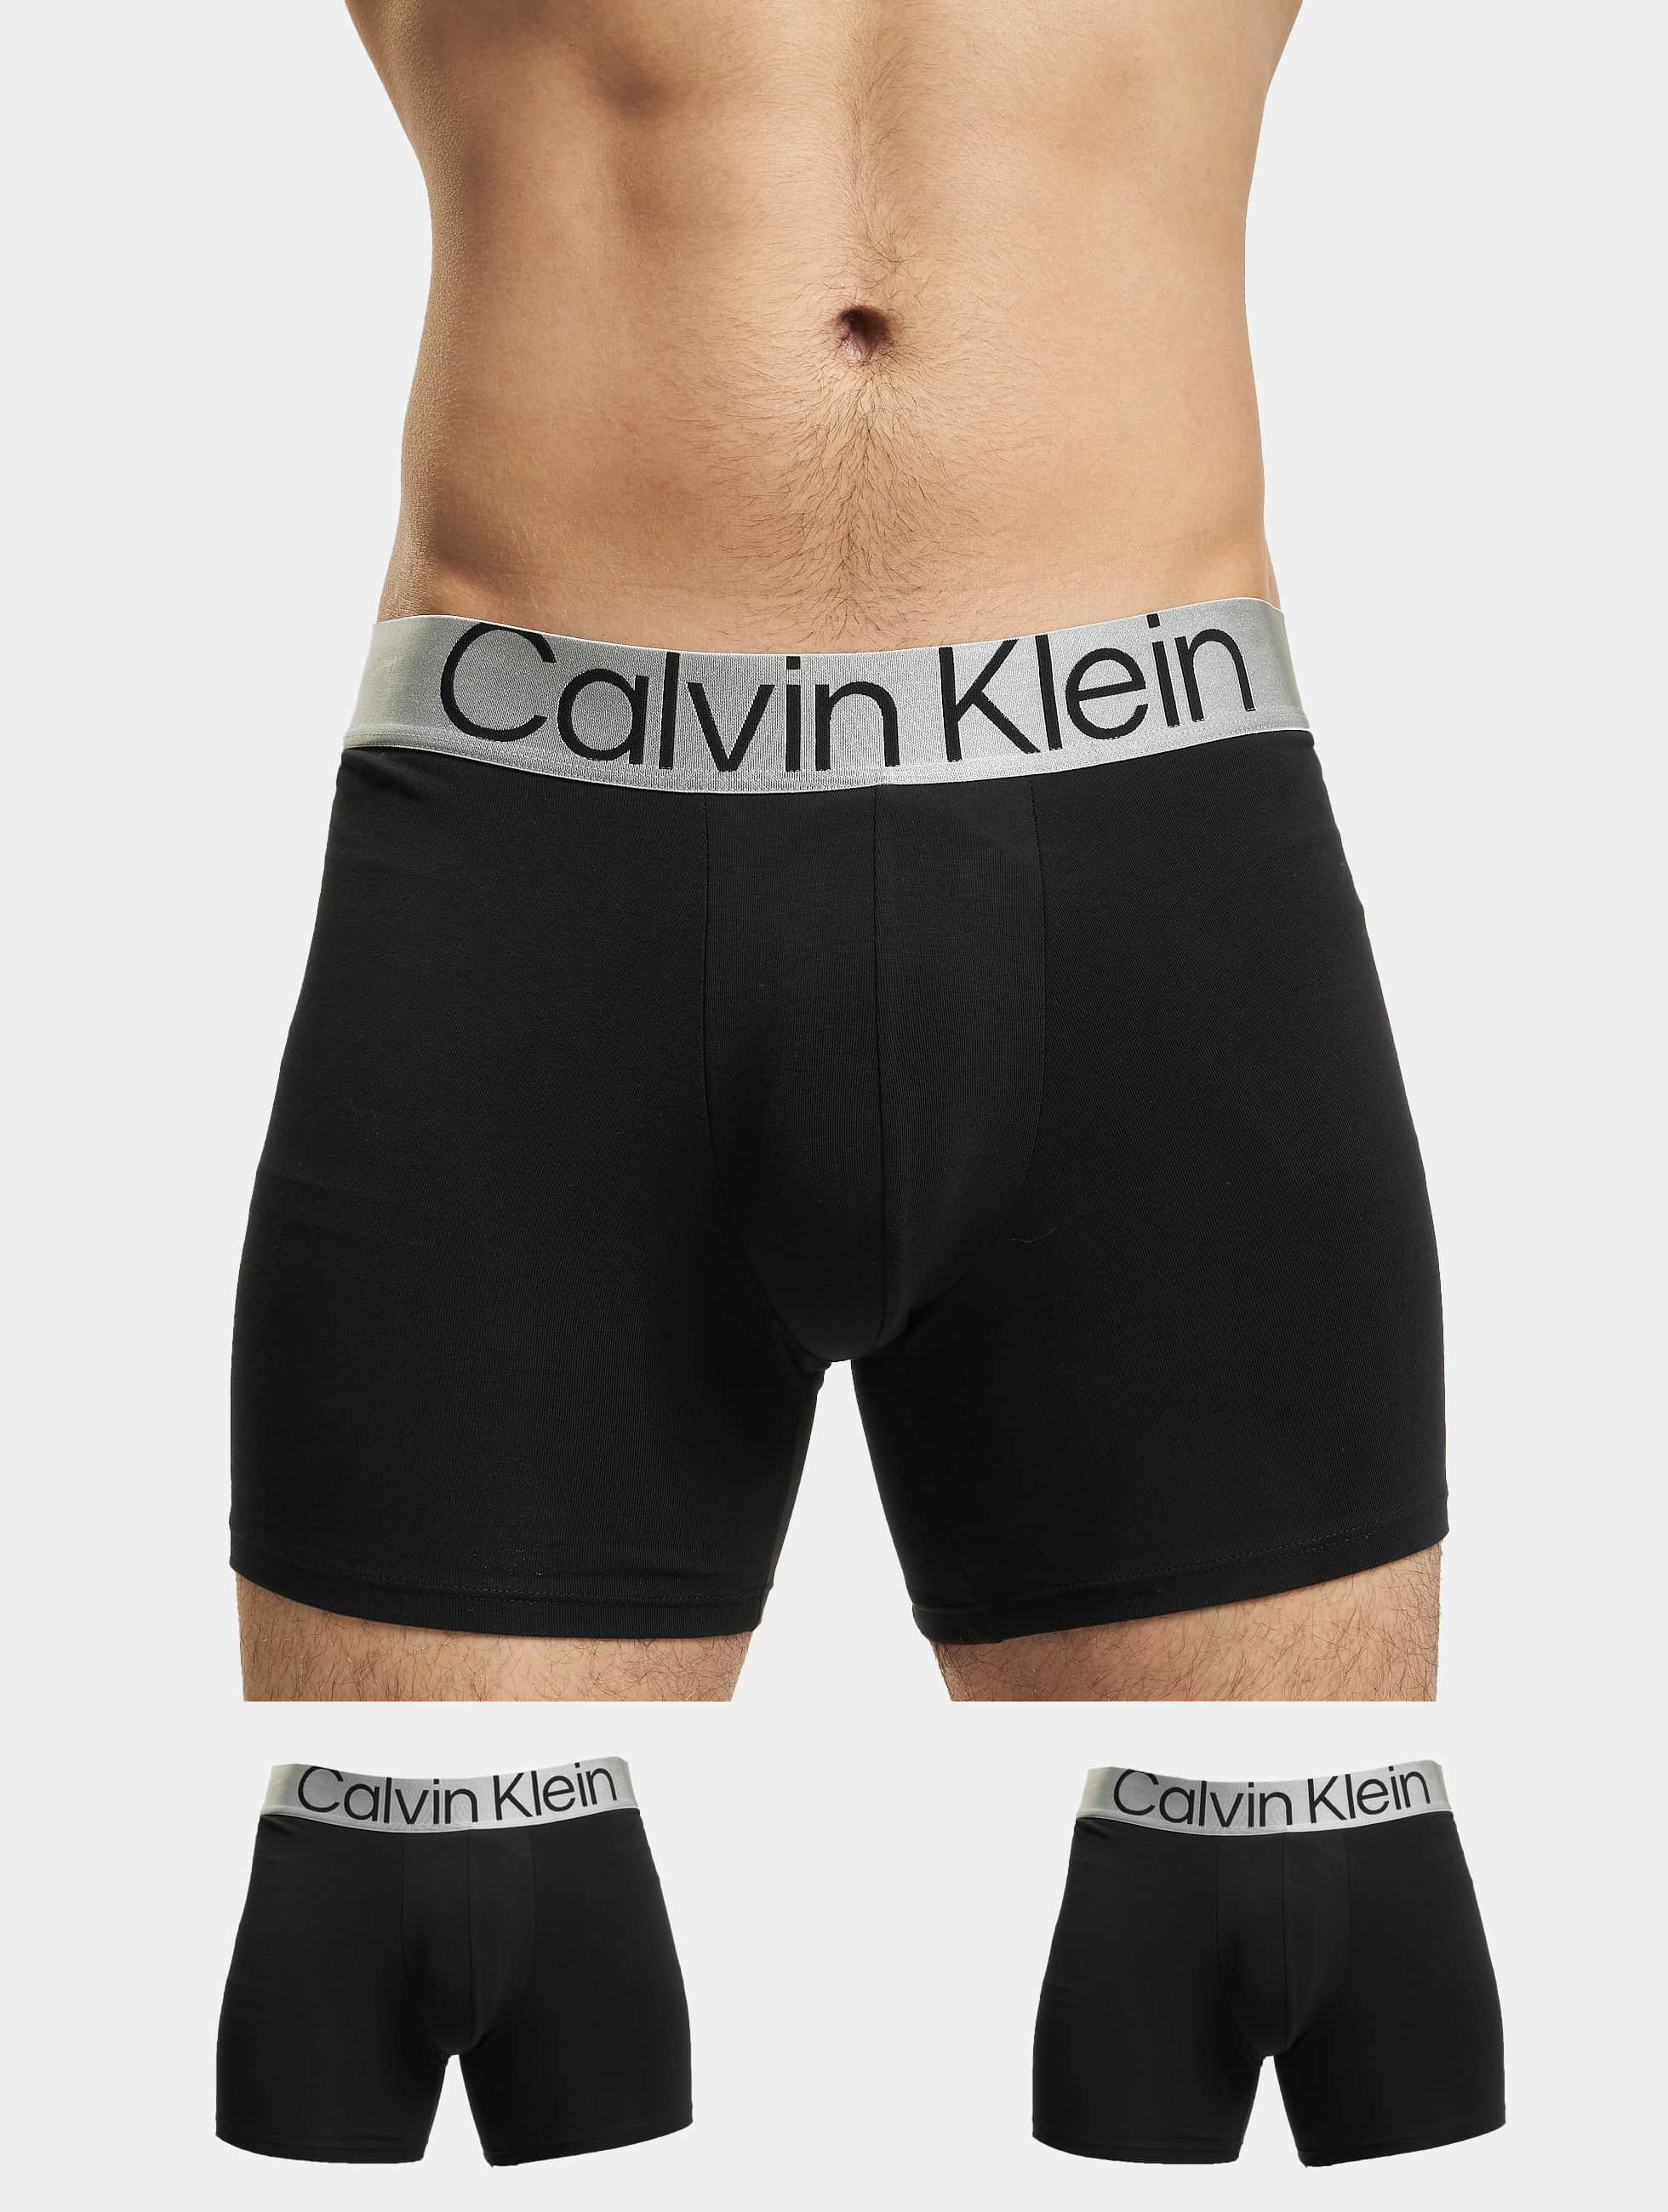 representación Artista Serpiente Calvin Klein Ropa interior / Moda de baño / Shorts boxeros 3-Pack en negro  957396